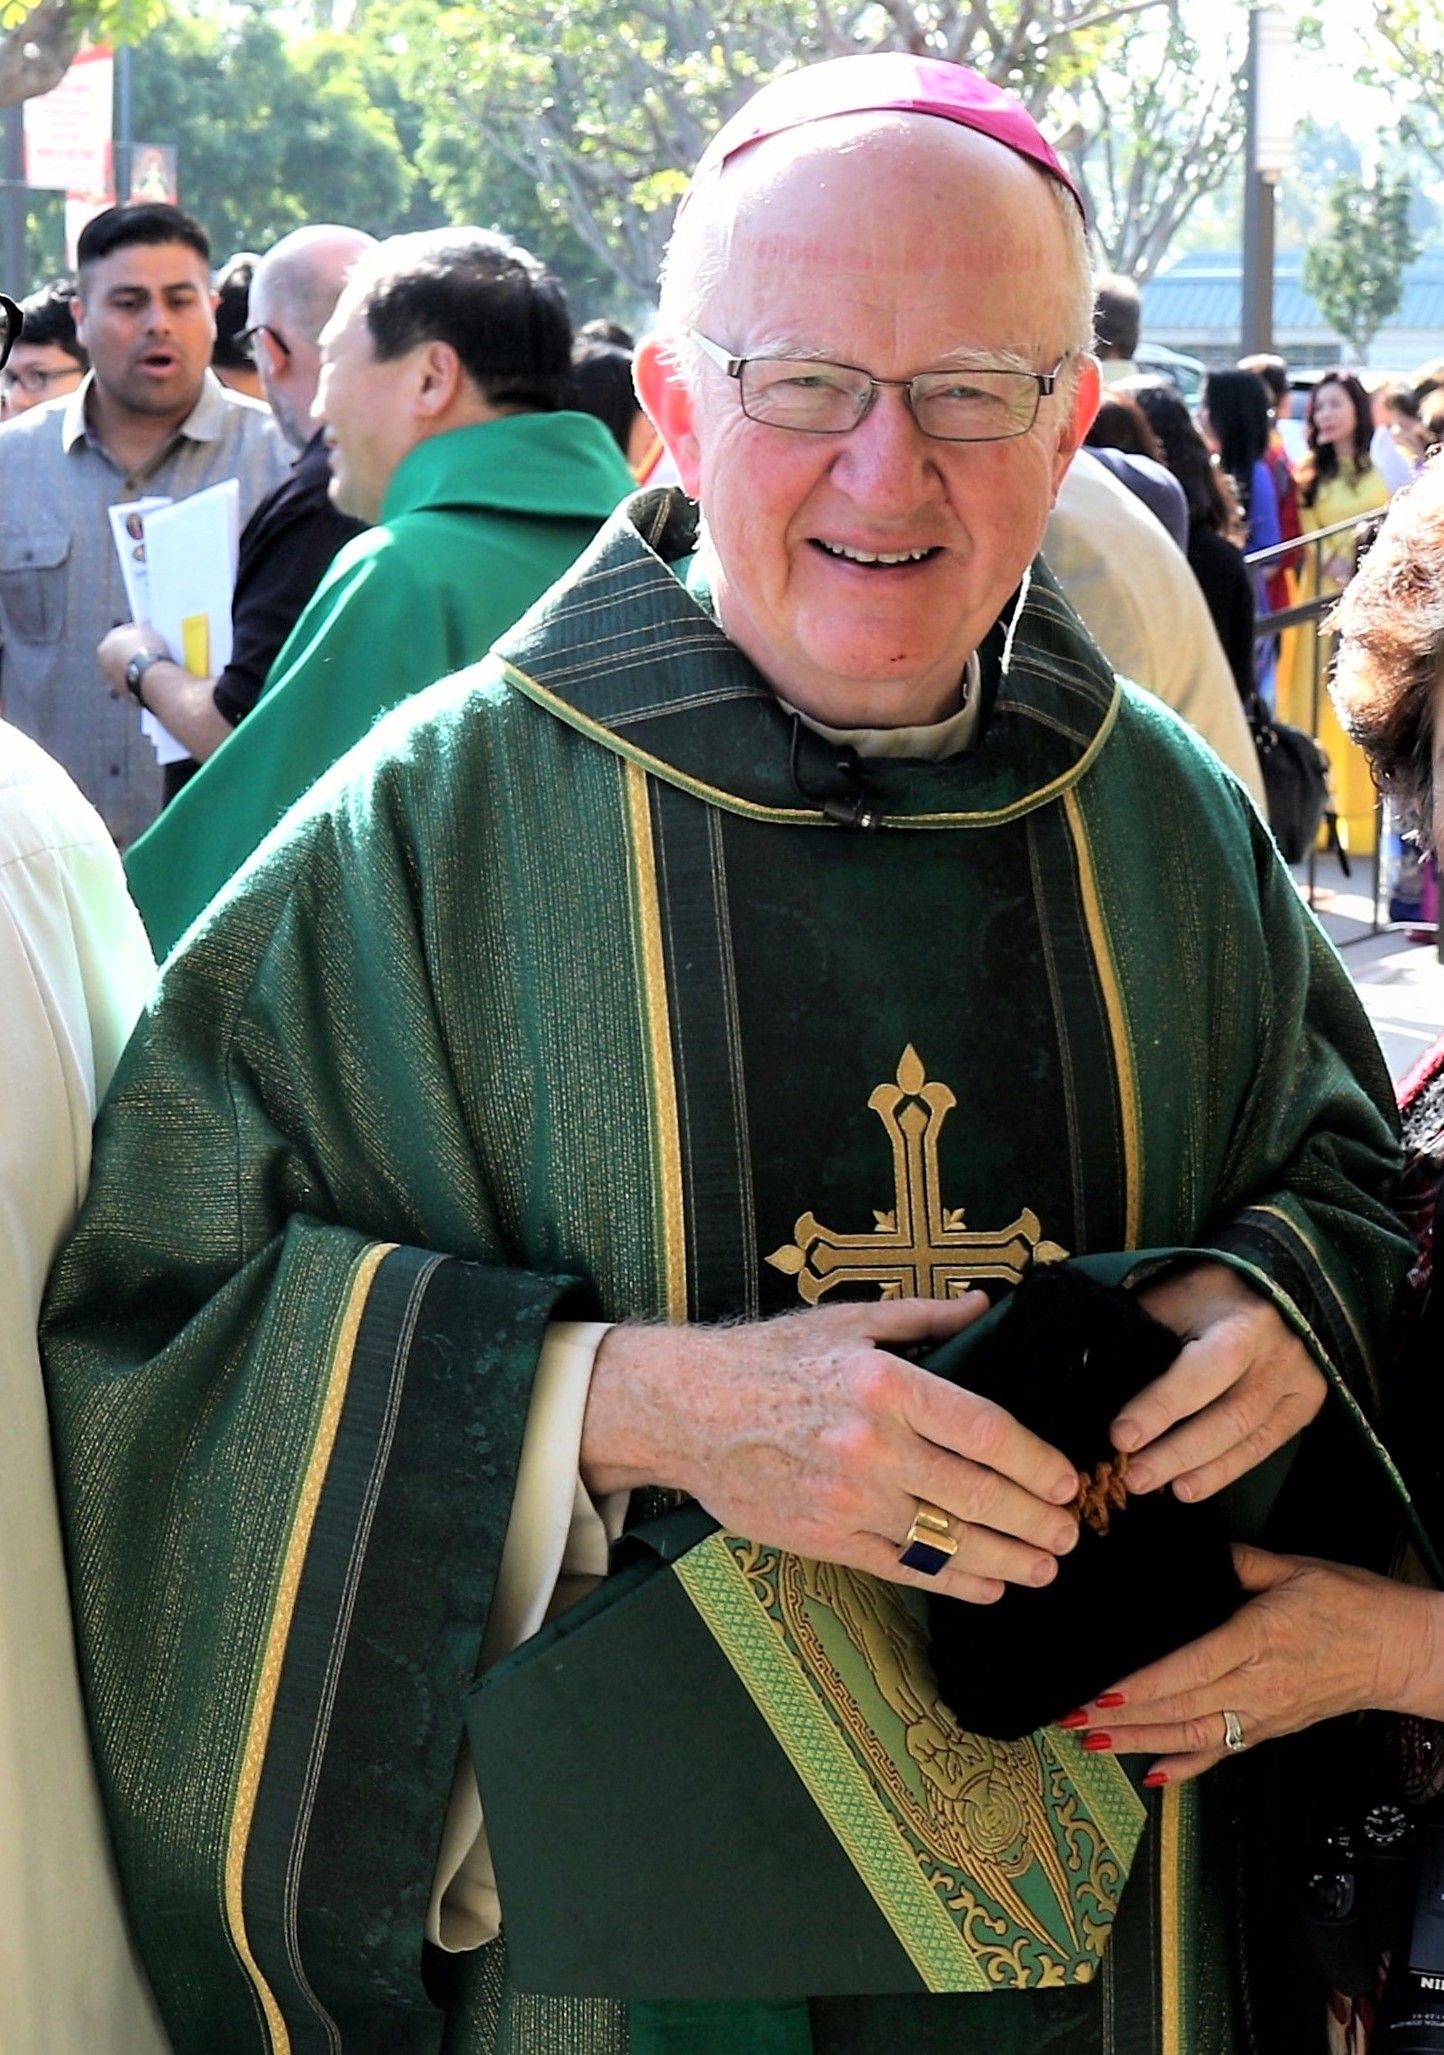 Bishop Kevin W. Vann